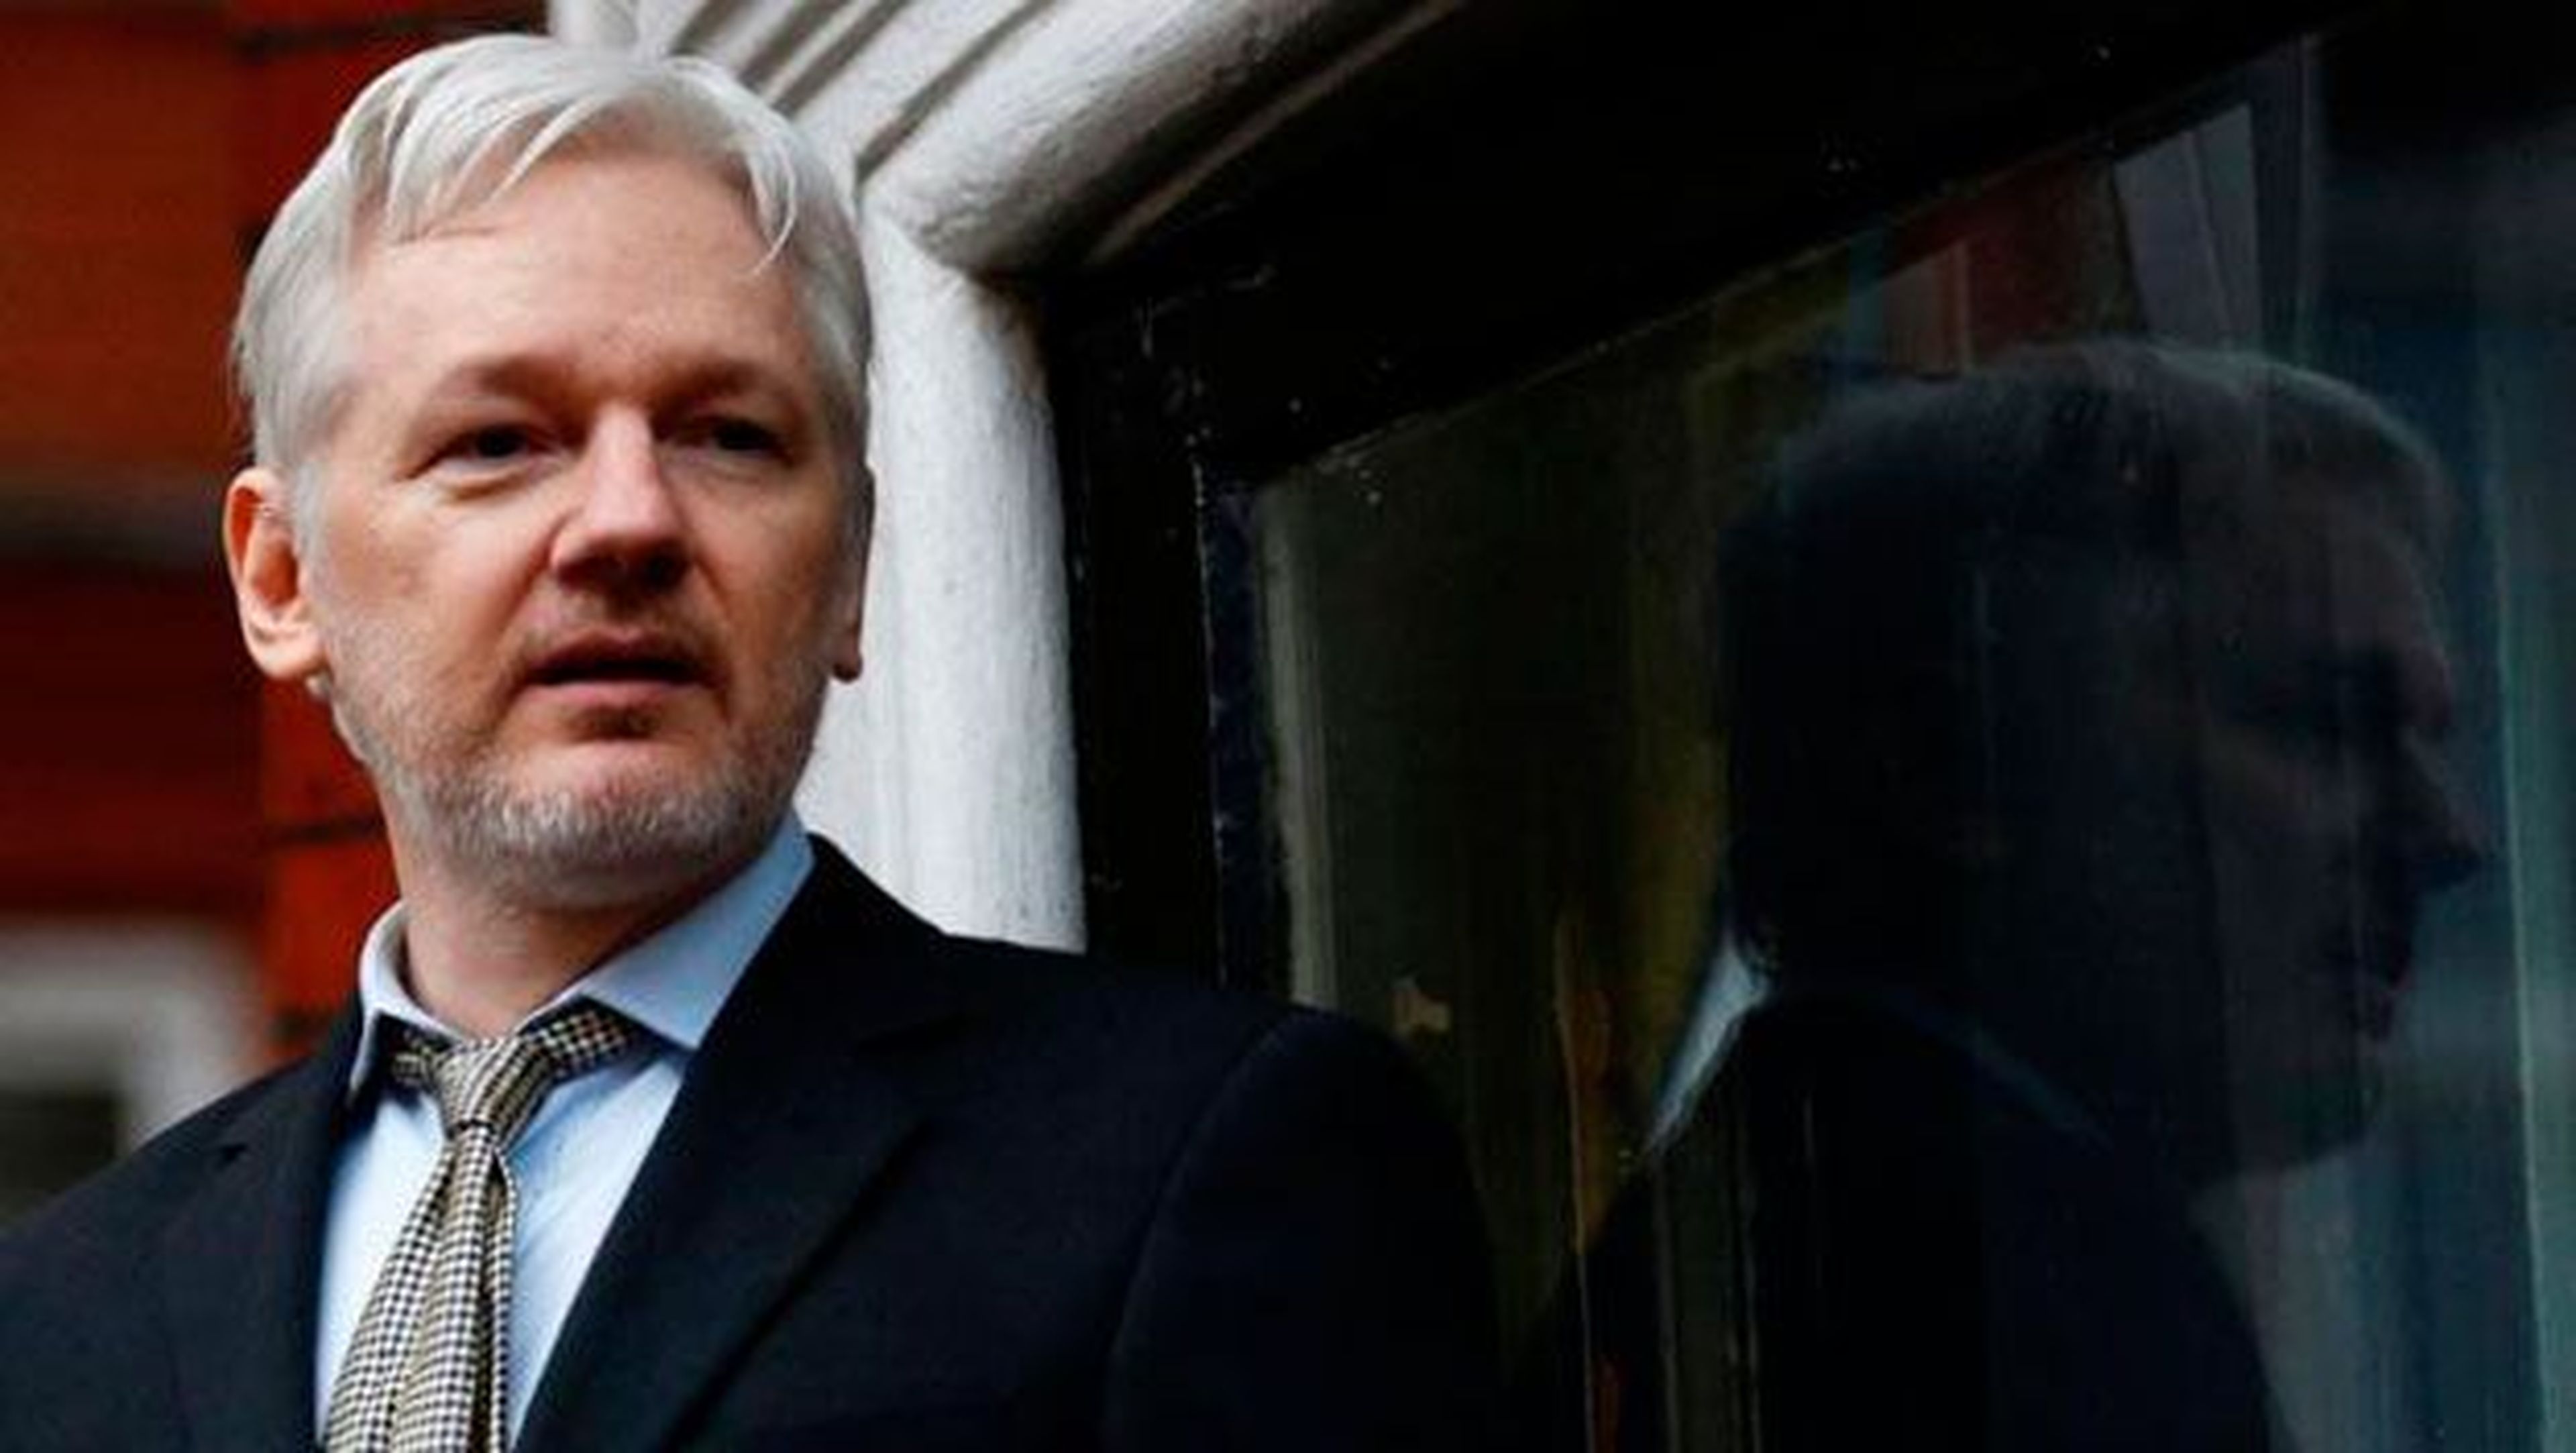 EEUU está considerando presentar cargos contra Wikileaks